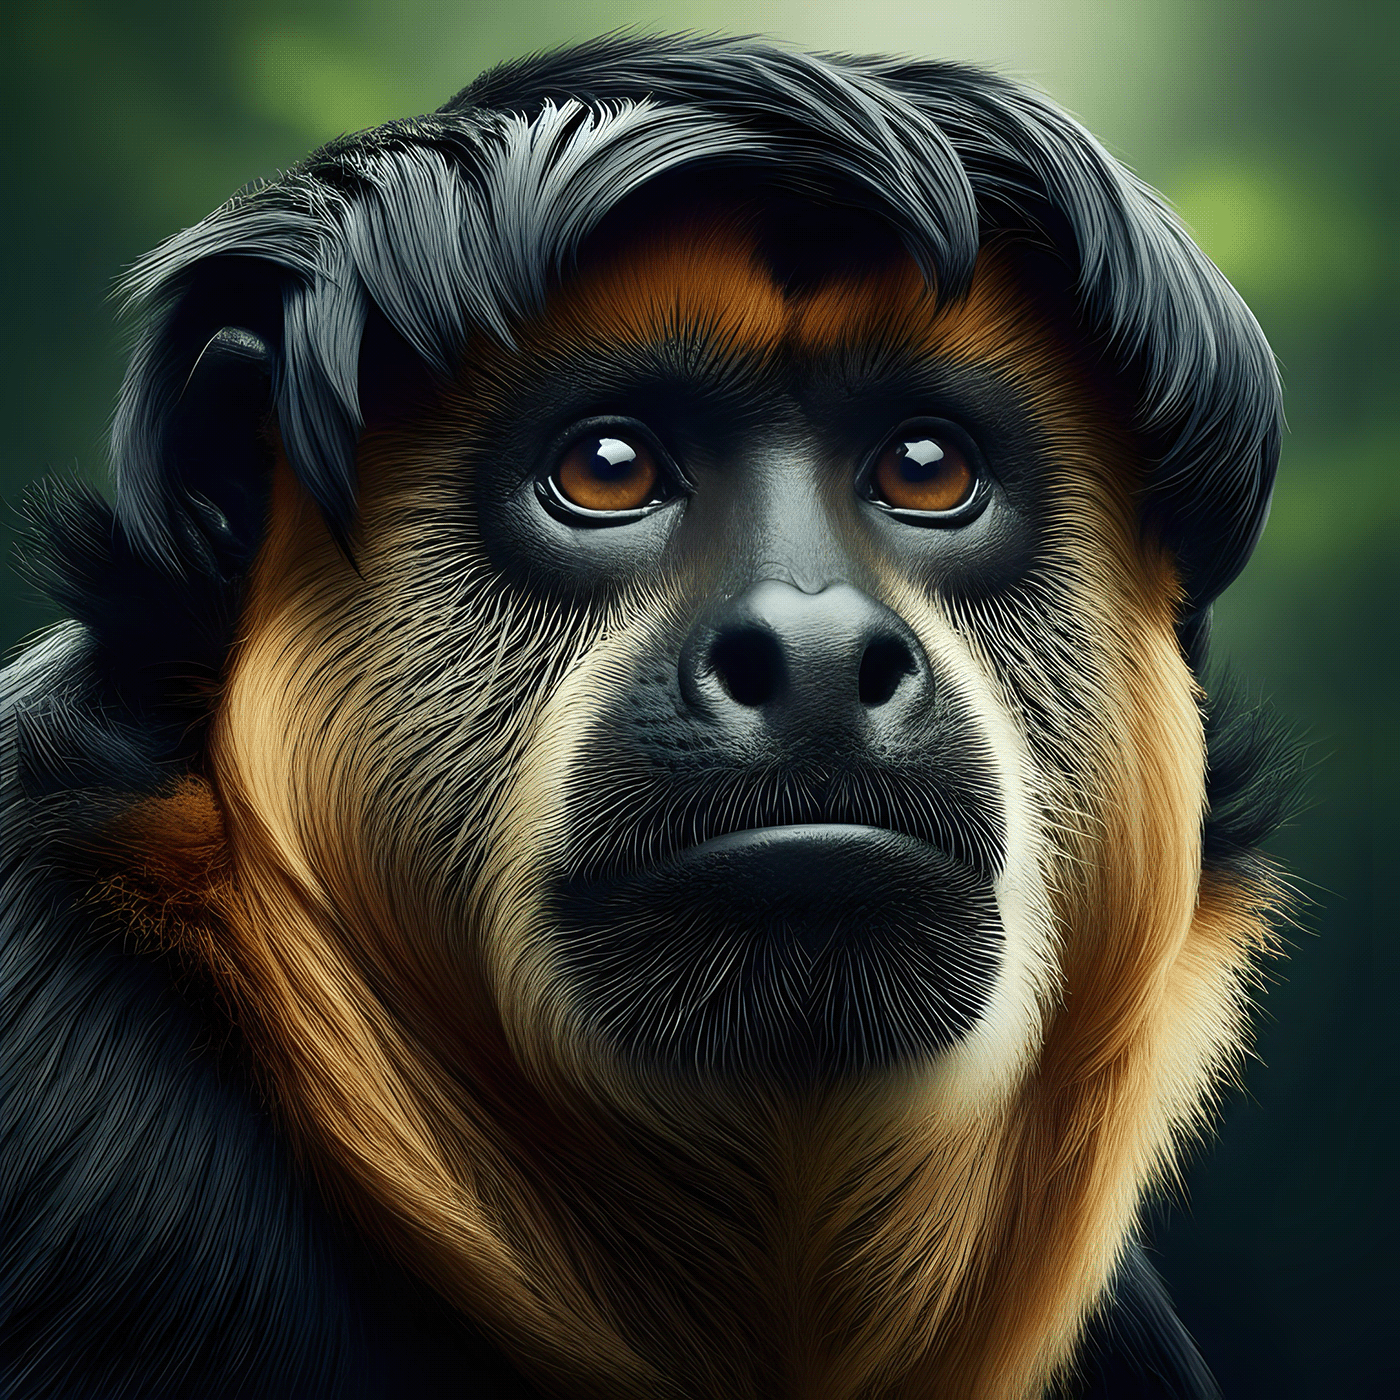 Amazon monkey rare species howler